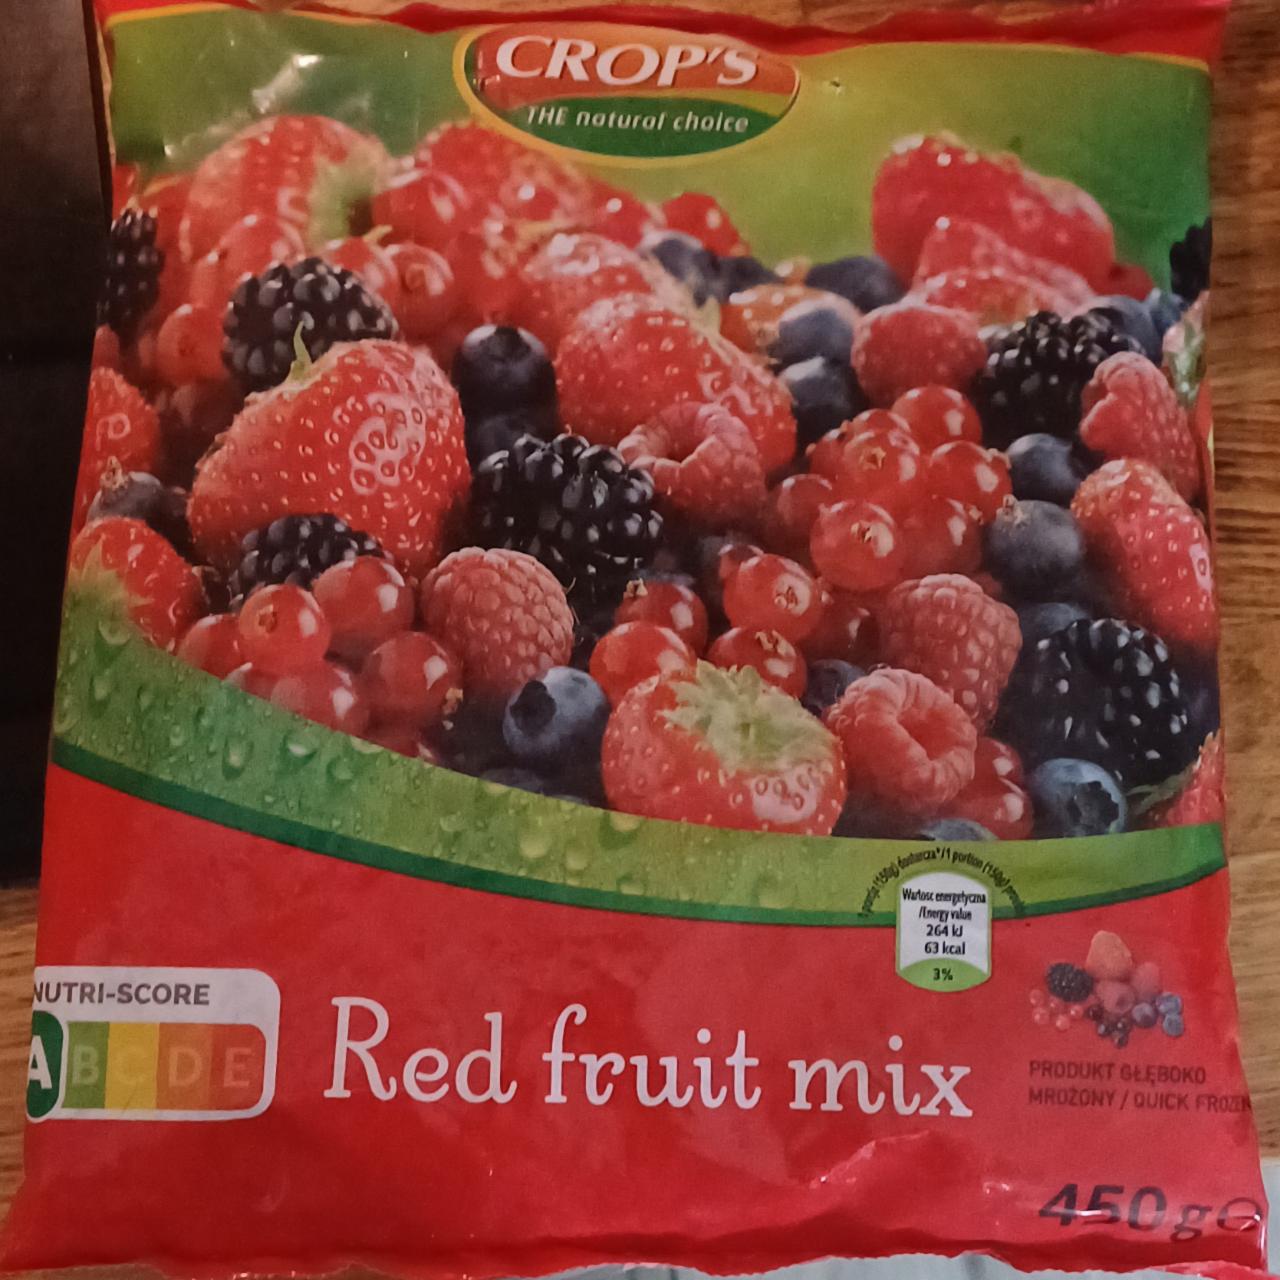 Fotografie - Red fruit mix Crop's